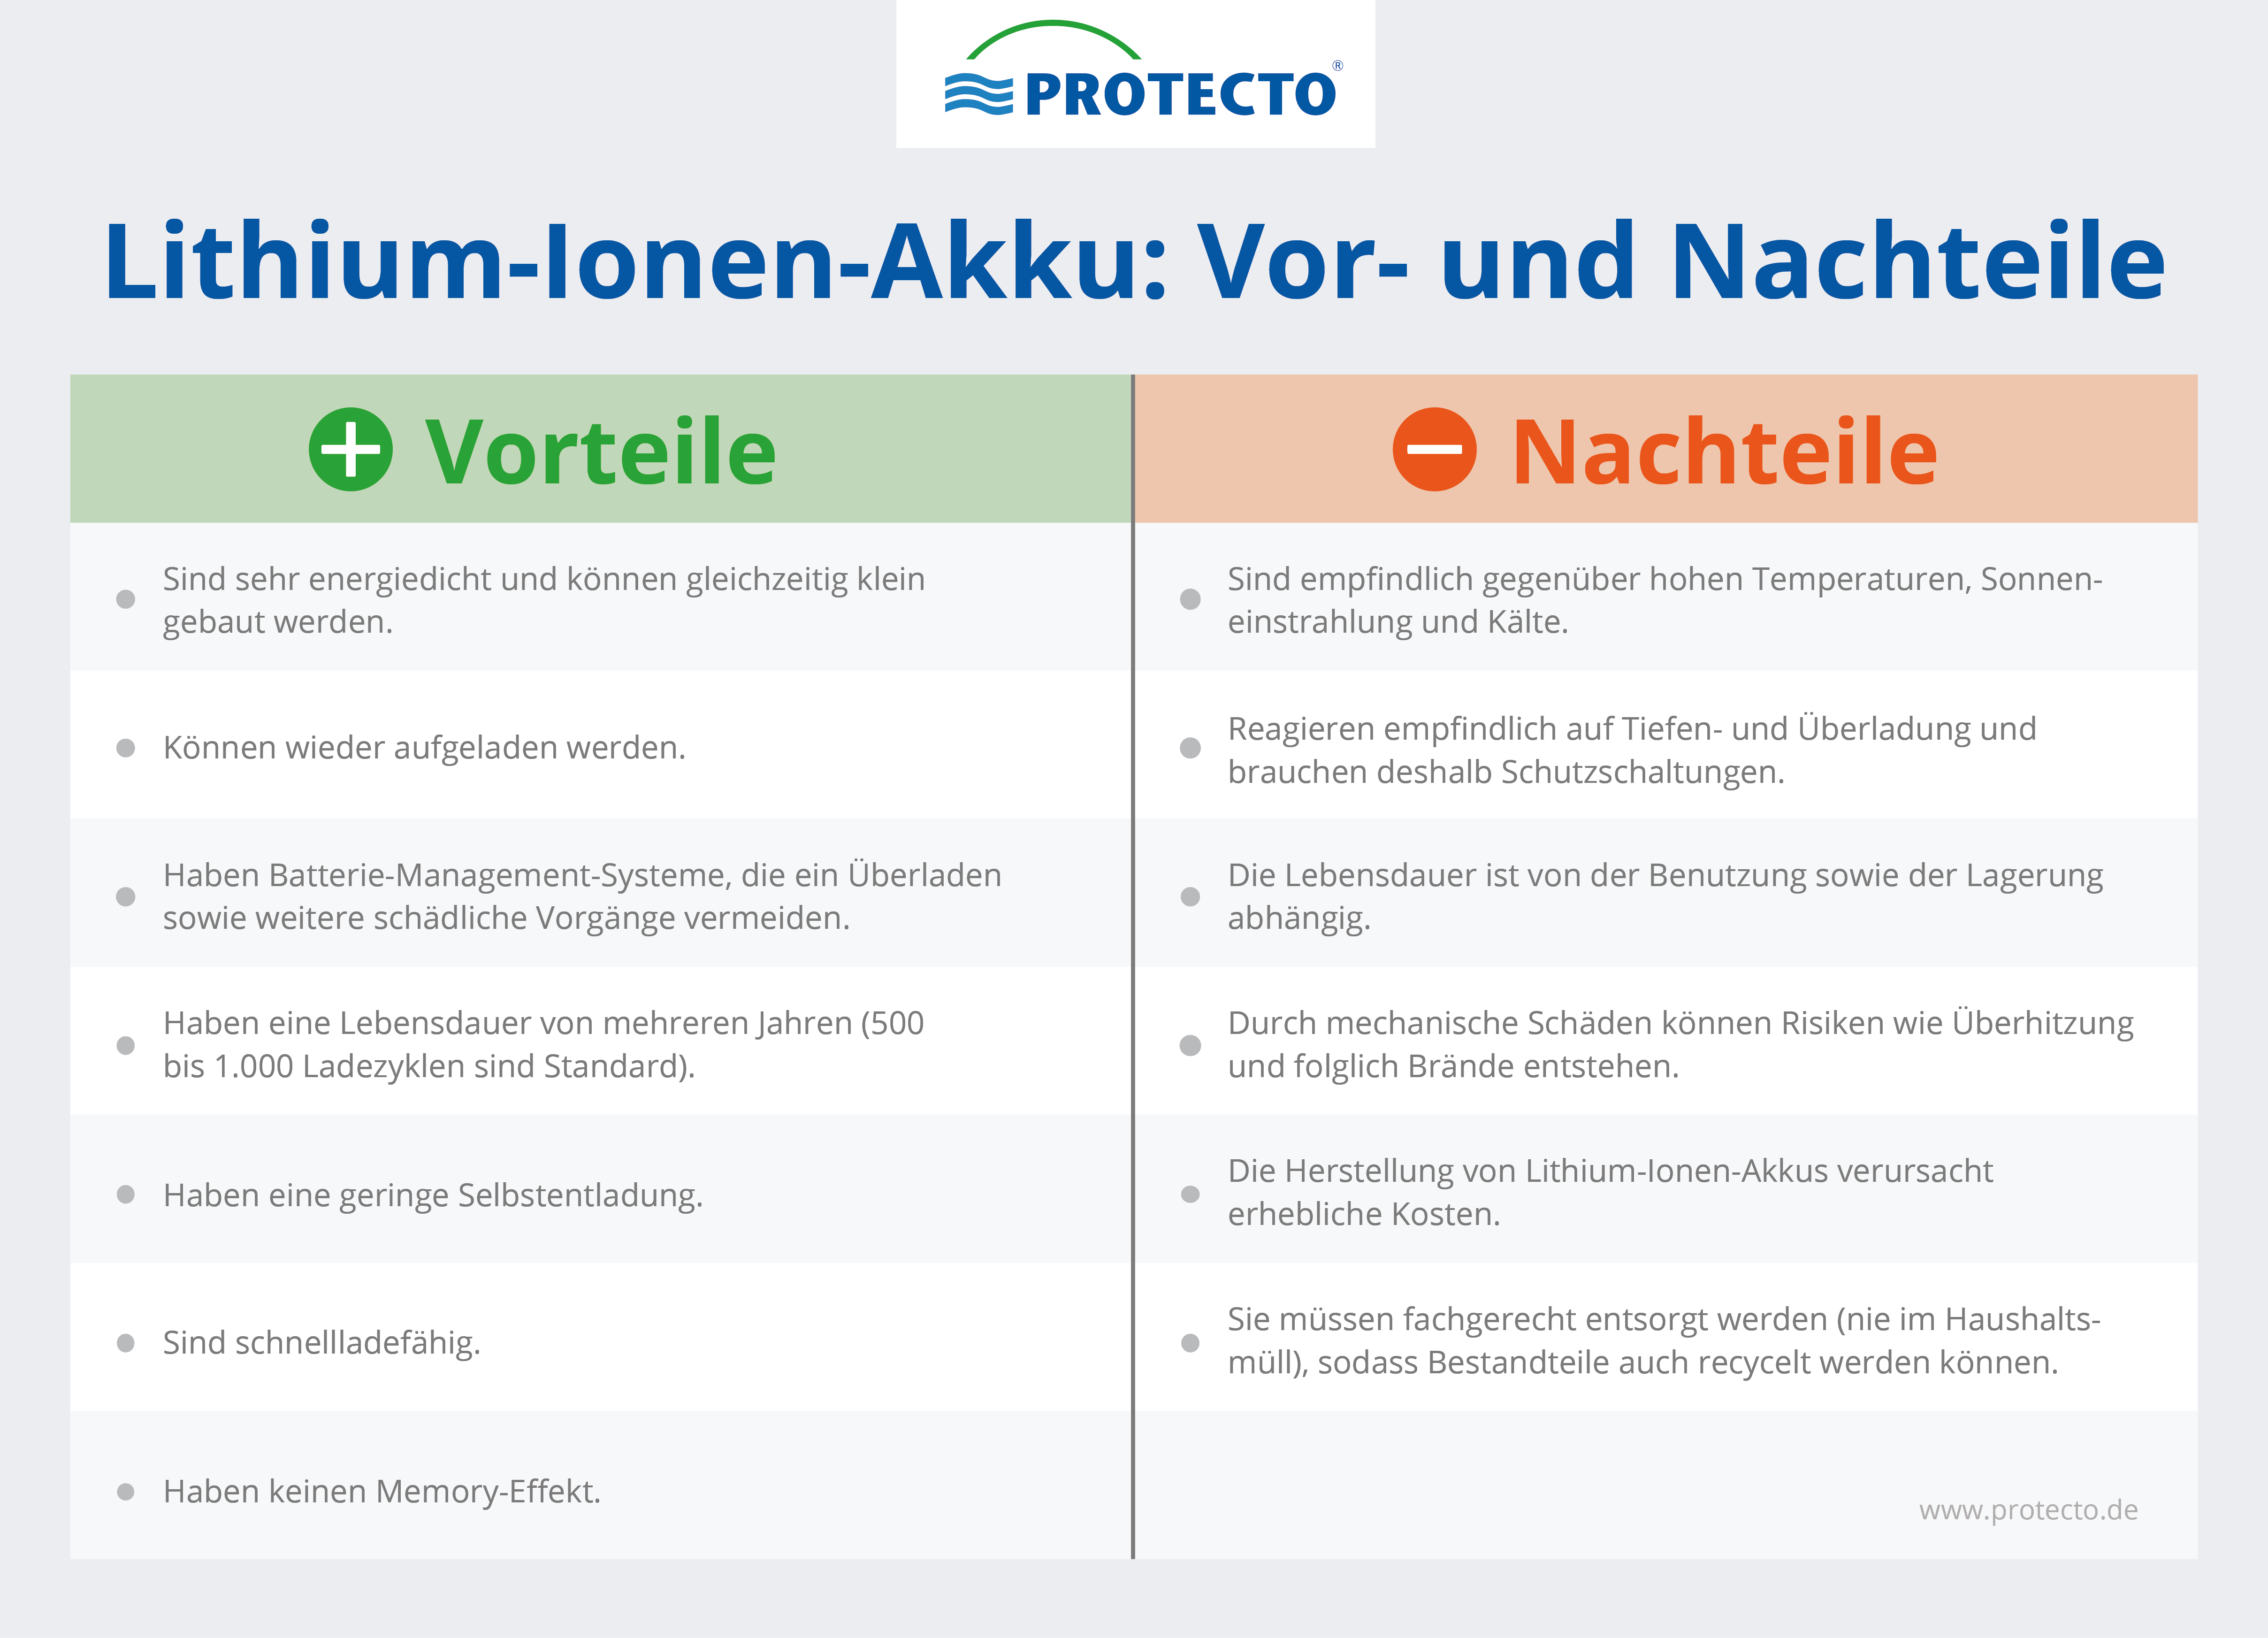 Die Vor- und Nachteile von Lithium-Ionen-Akkus.